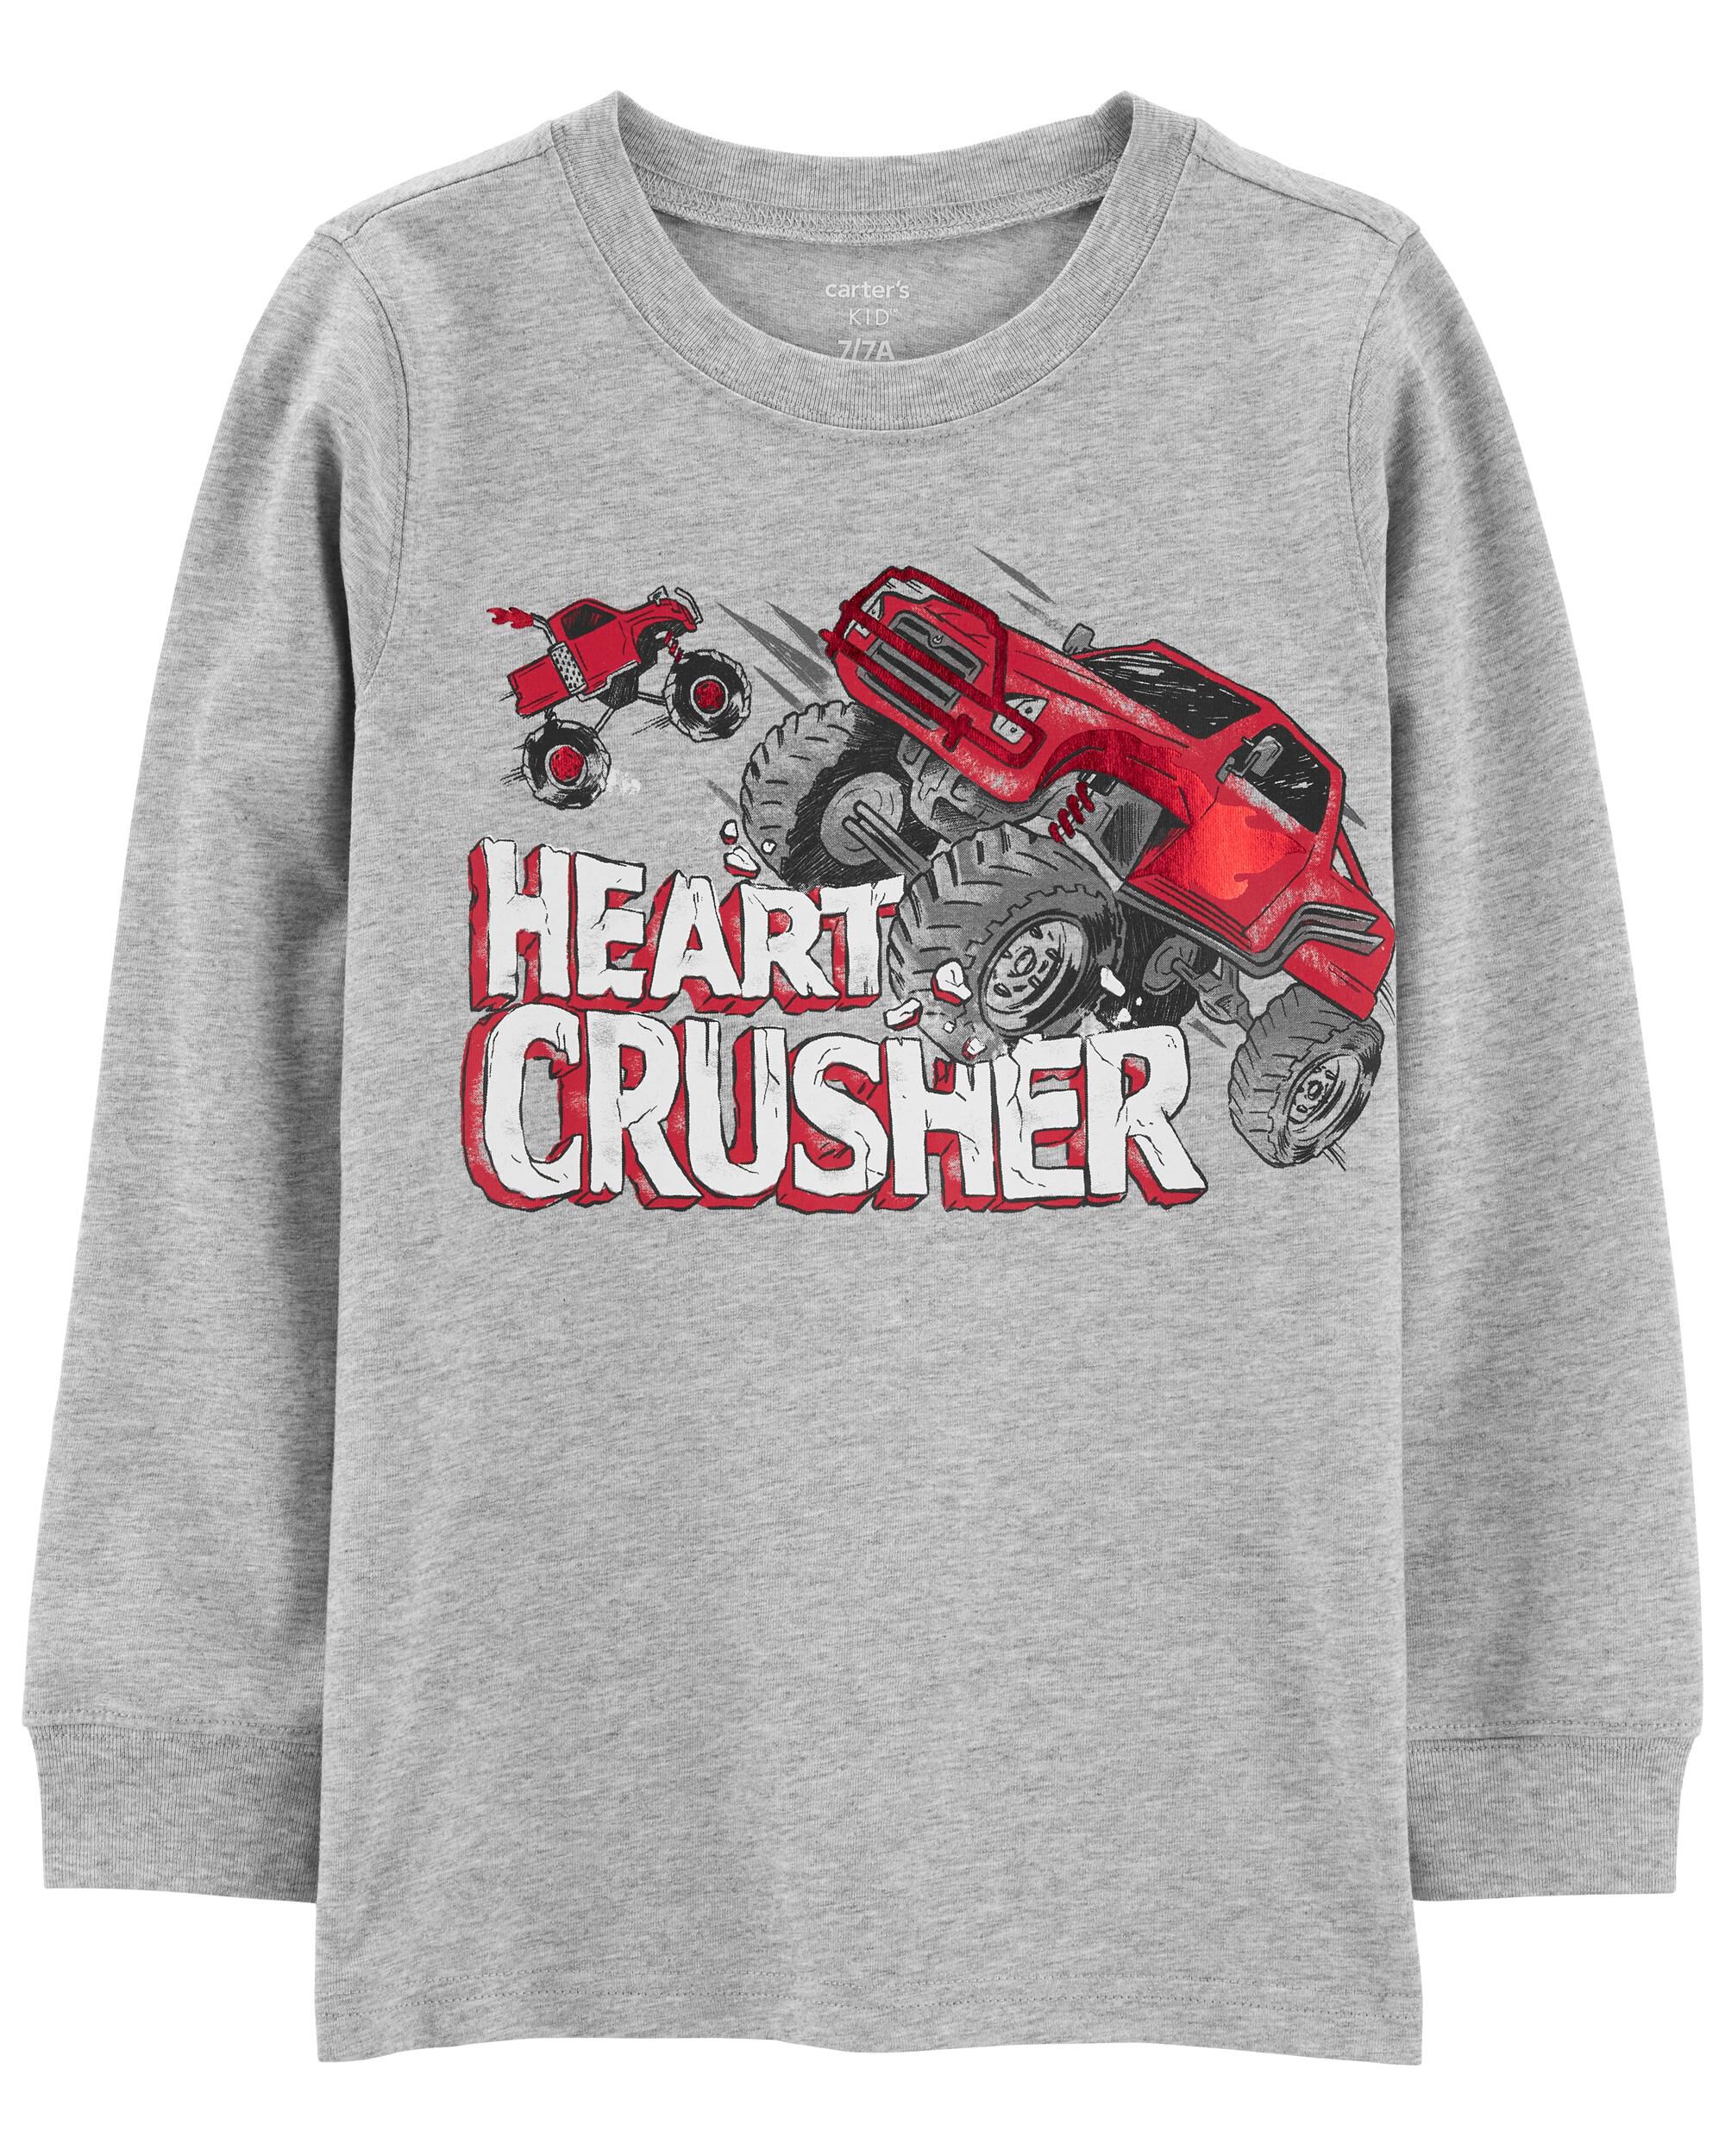 Детская футболка с рисунком Crusher ко Дню святого Валентина Carter's